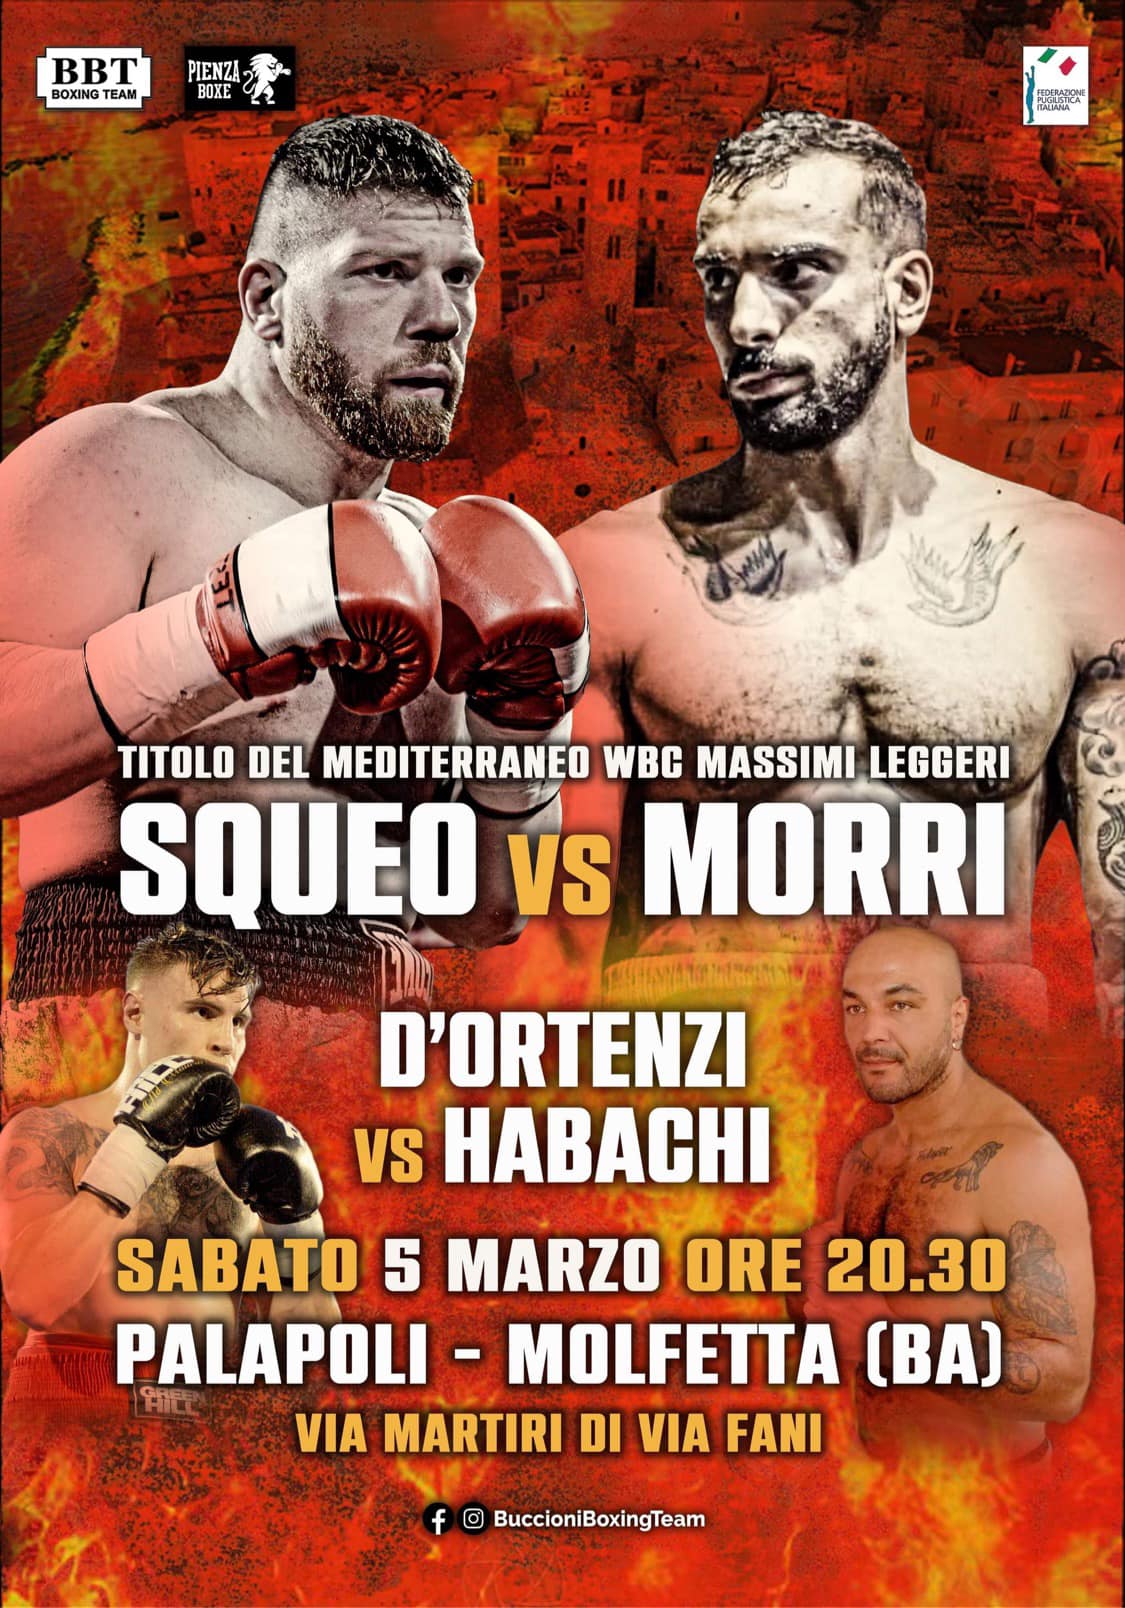 Il 5 marzo a Molfetta Squeo vs Morri per il Mediterraneo WBC Cruiser 